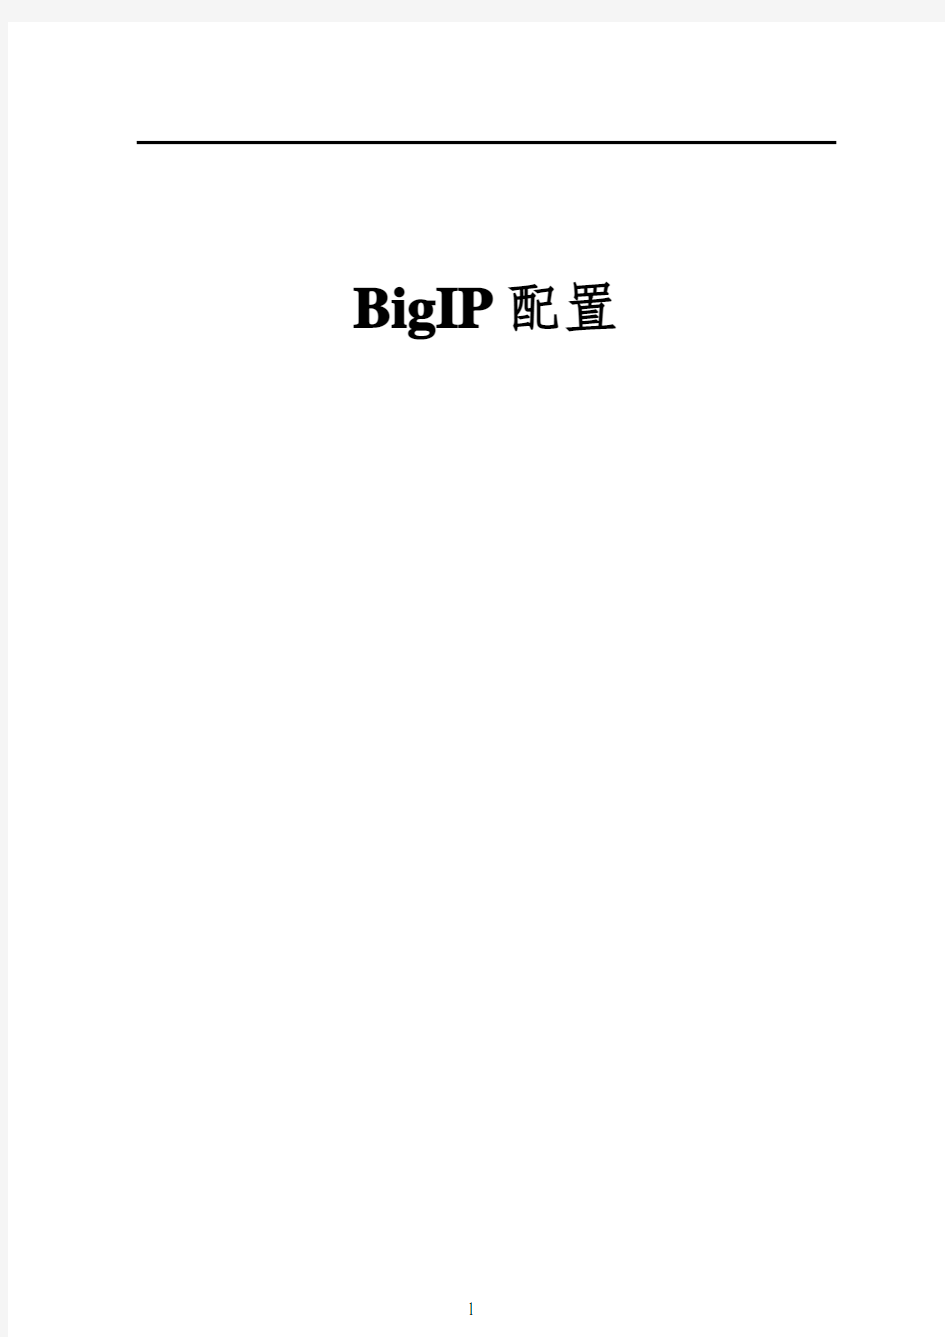 F5-BigIP配置步骤